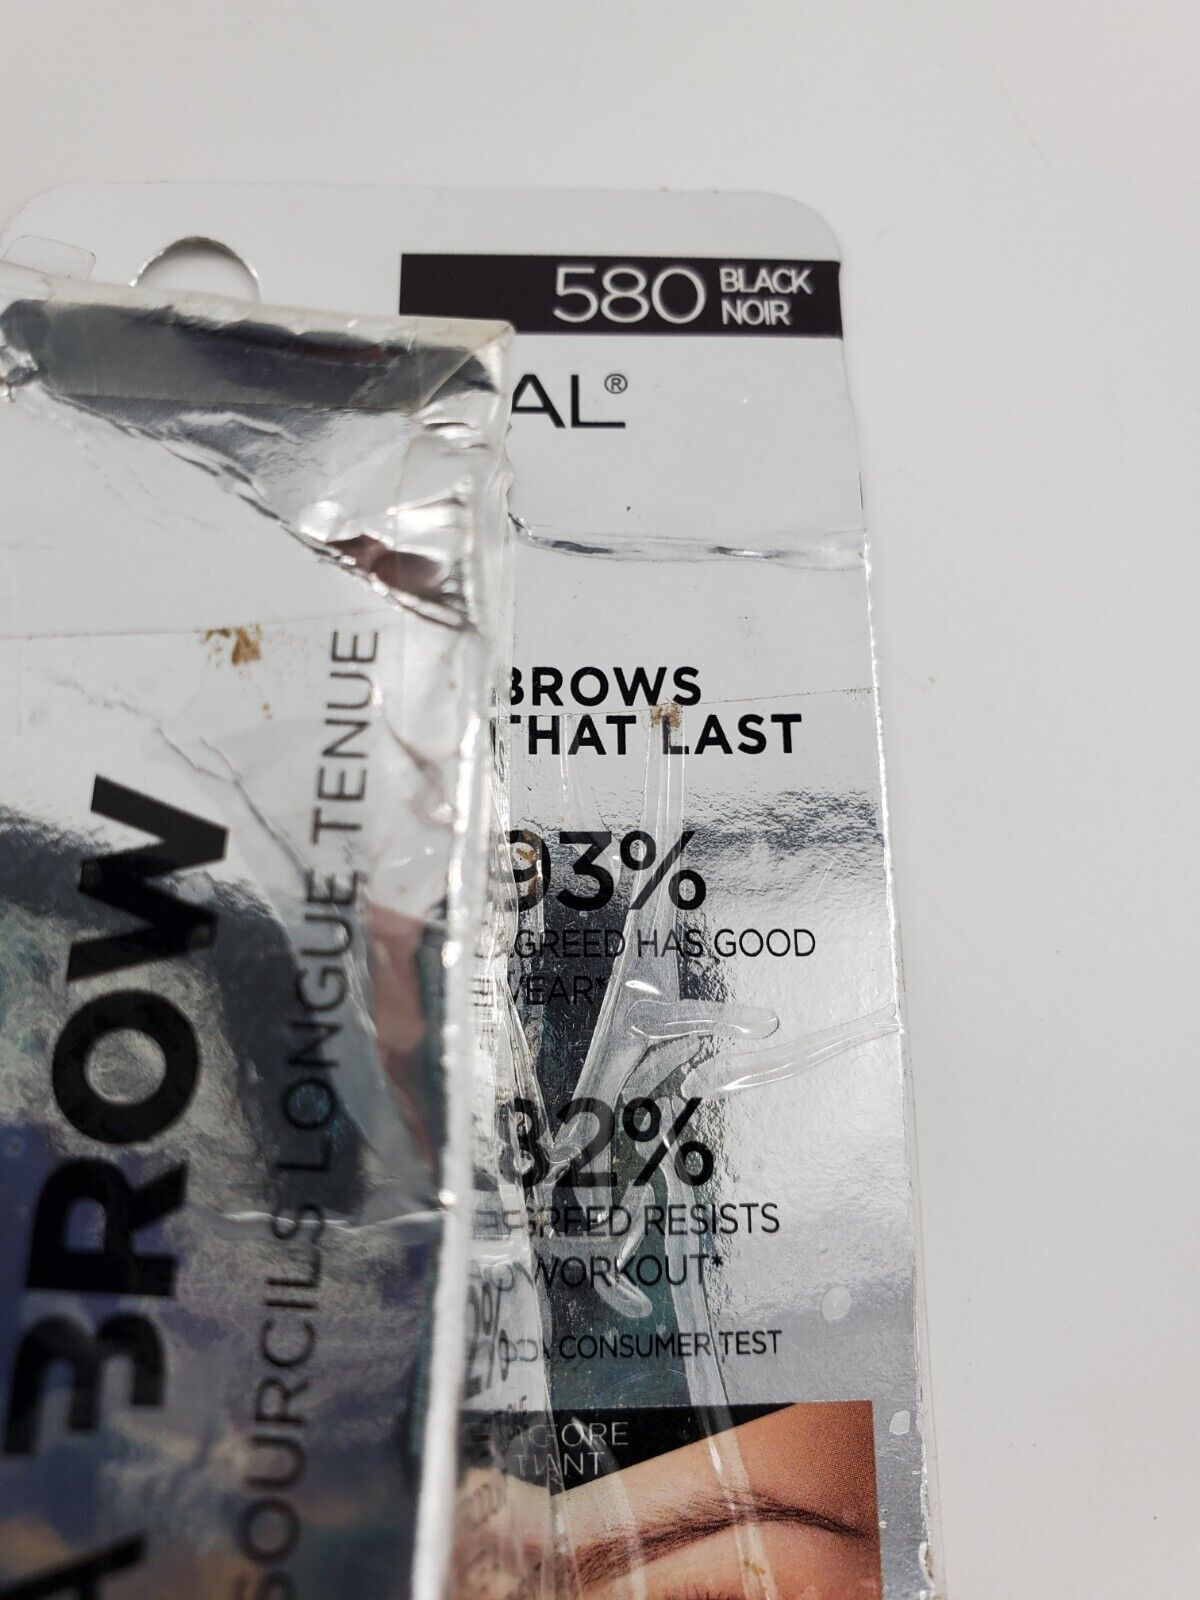 L'Oreal Unbelieva Brow Tinted Waterproof Brow Gel 580  Black  - $9.99